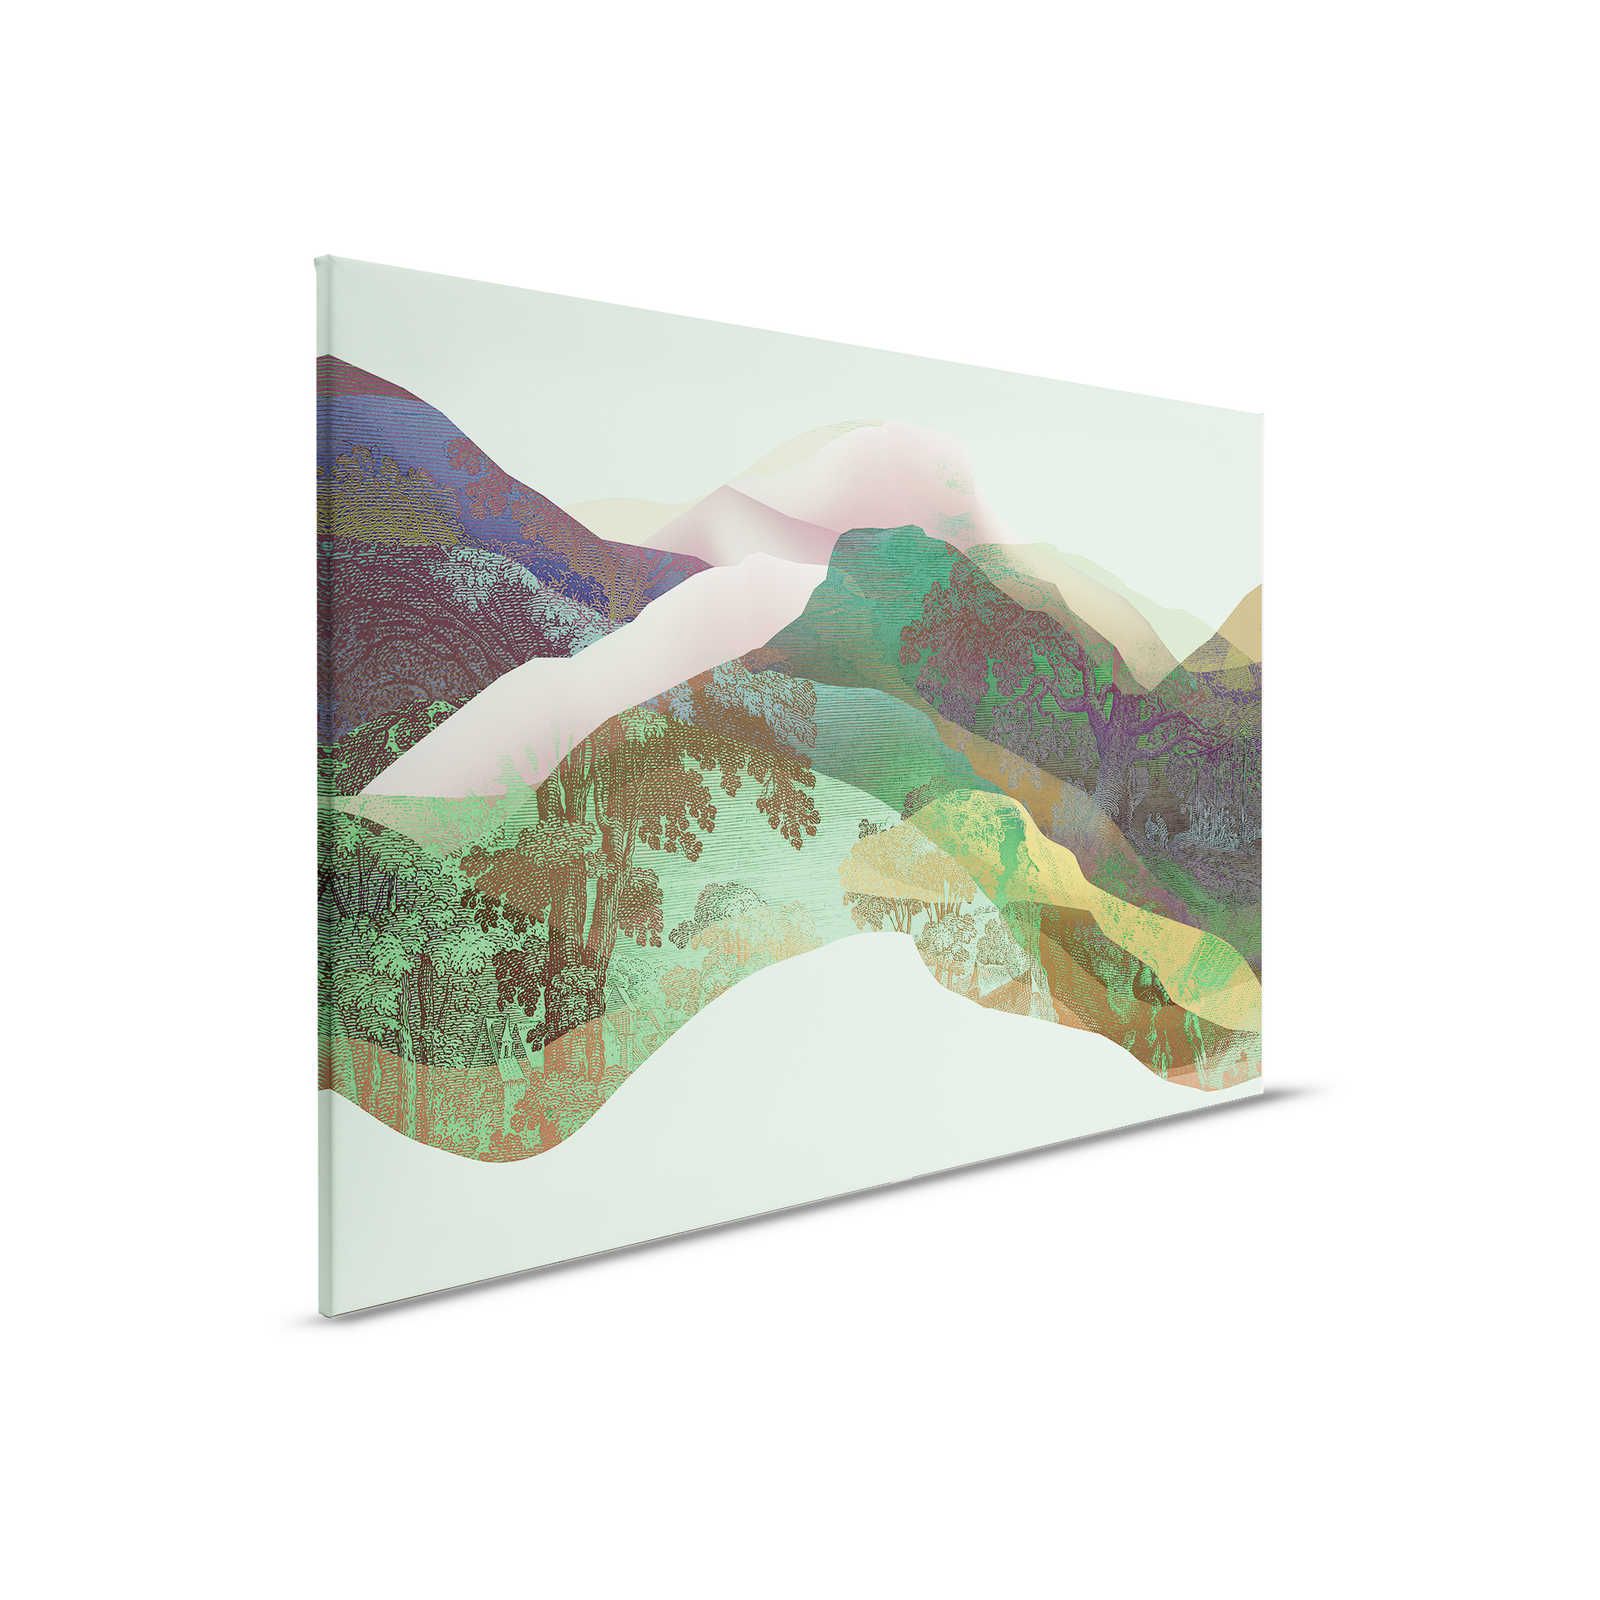 Magic Mountain 3 - Quadro su tela con montagne verdi dal design moderno - 0,90 m x 0,60 m
